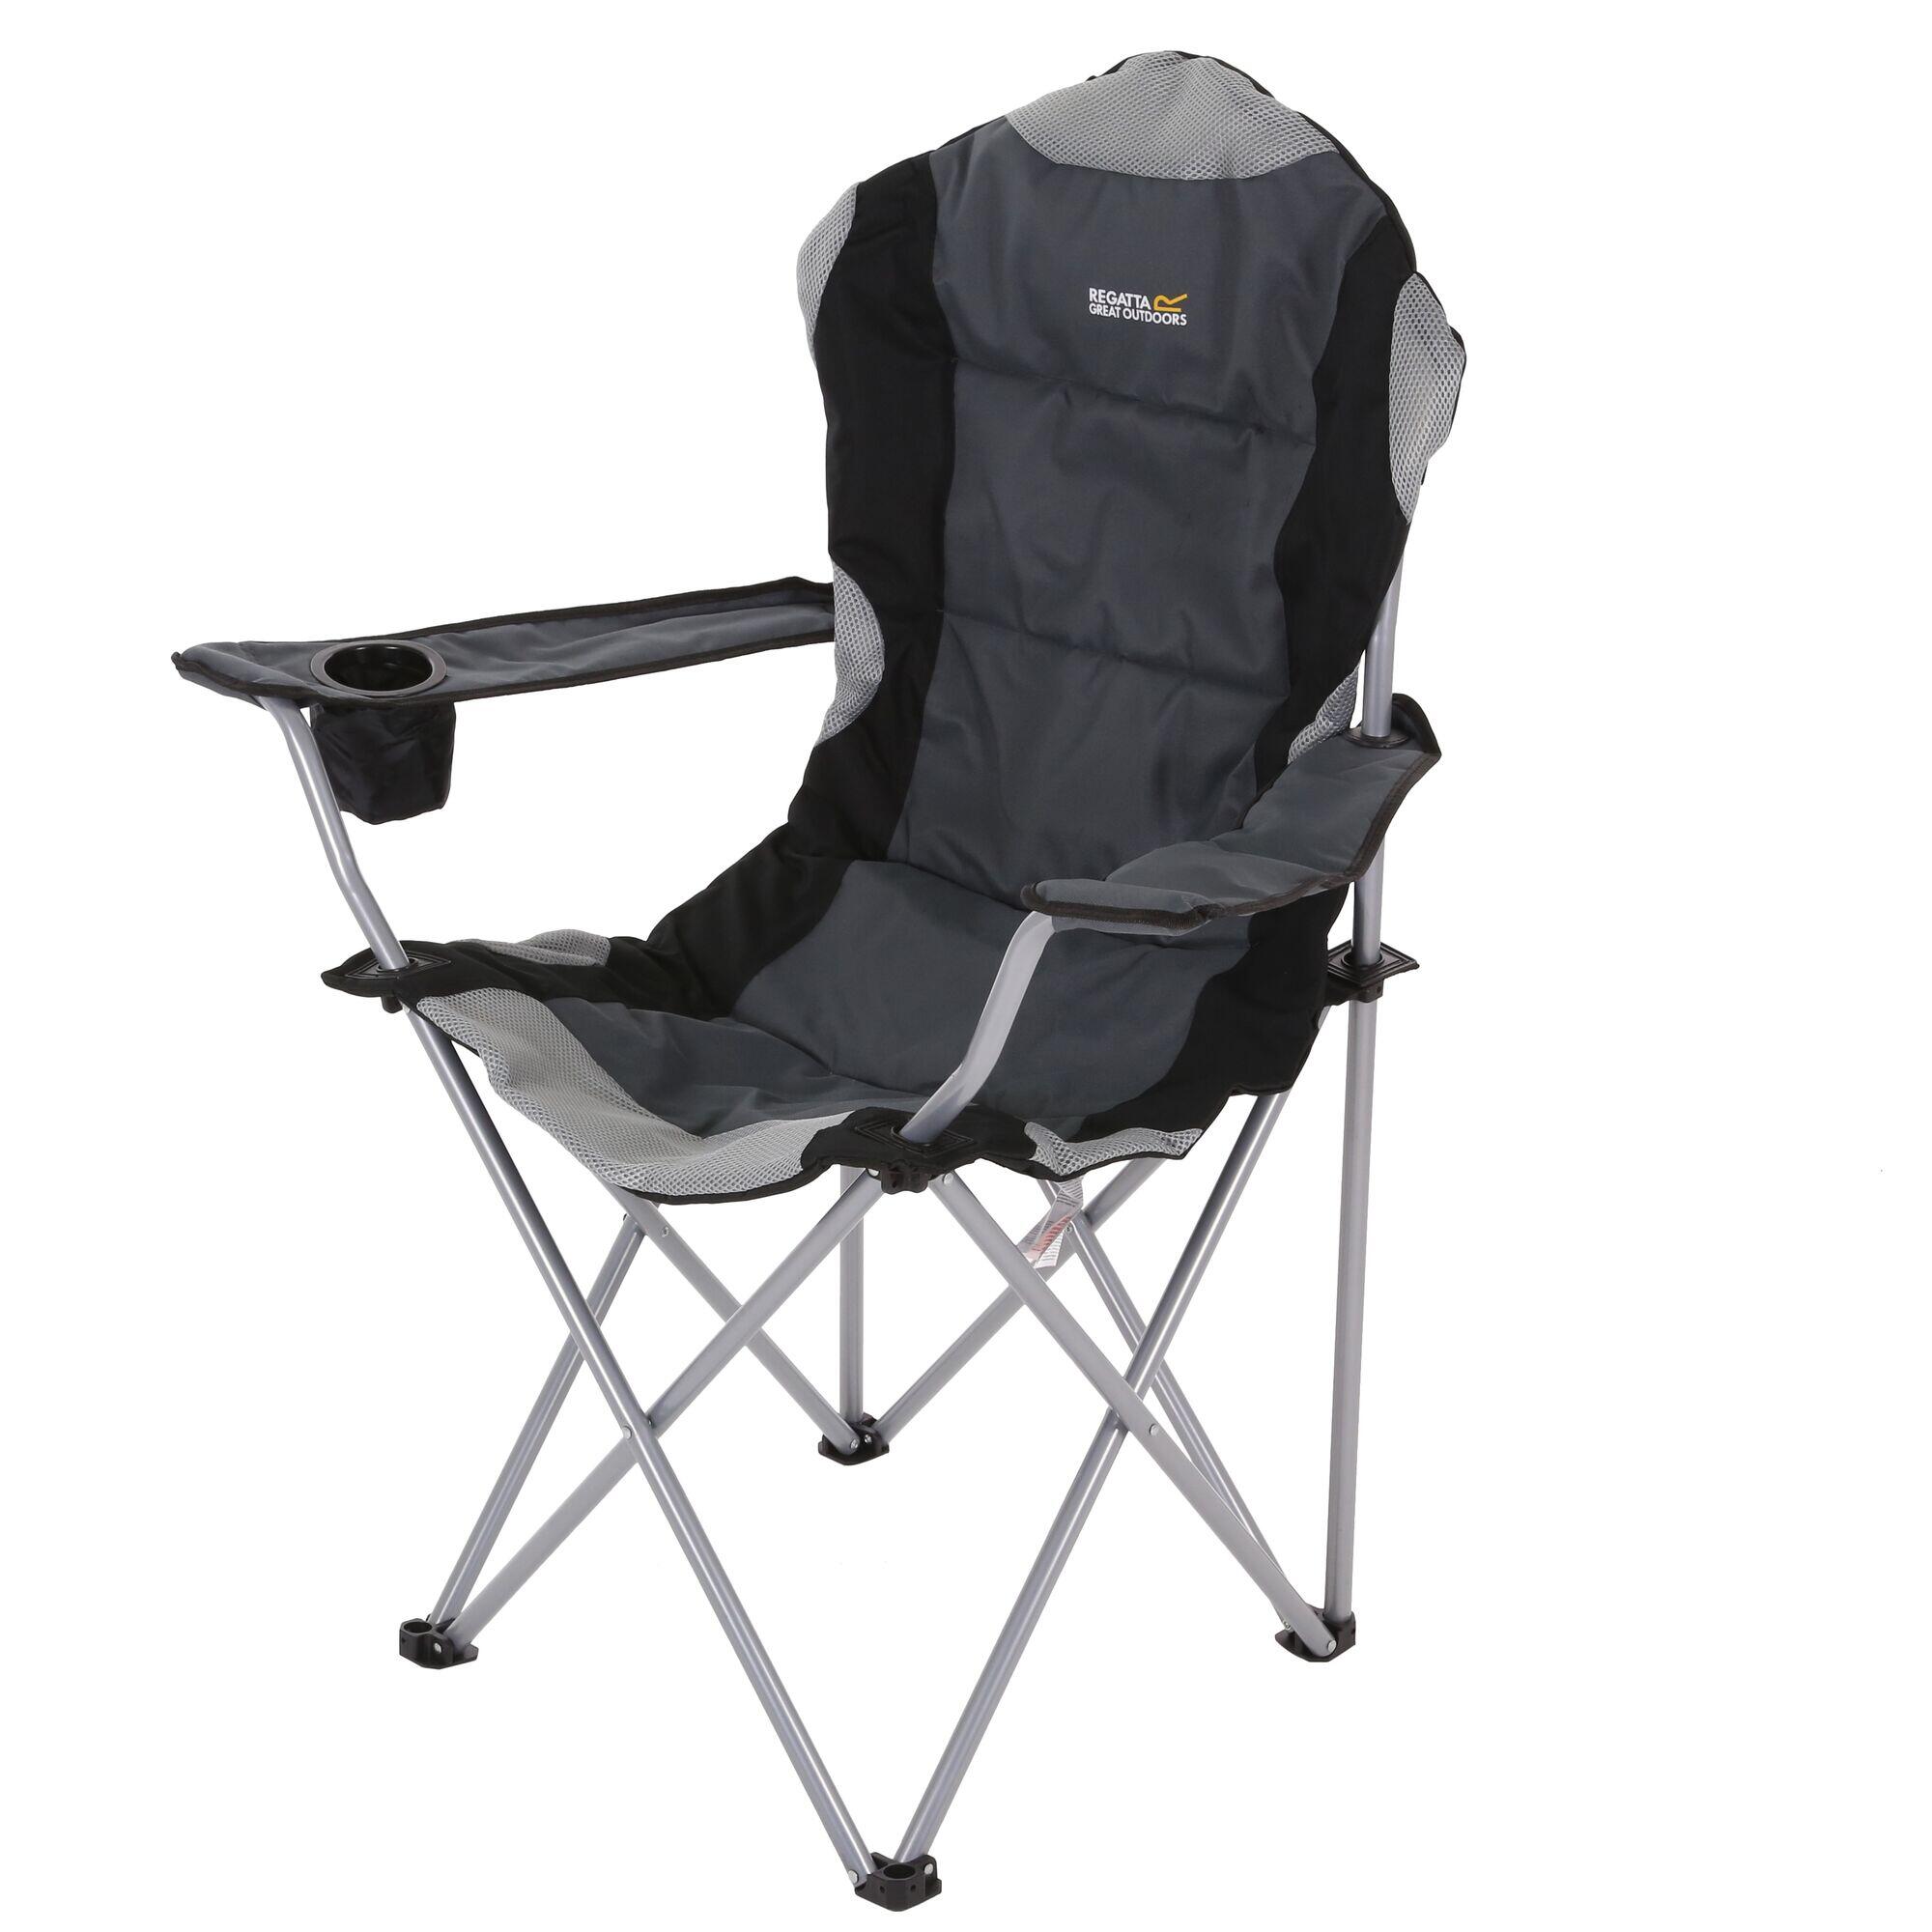 Kruza Adults' Camping Chair - Black Seal Grey 1/1